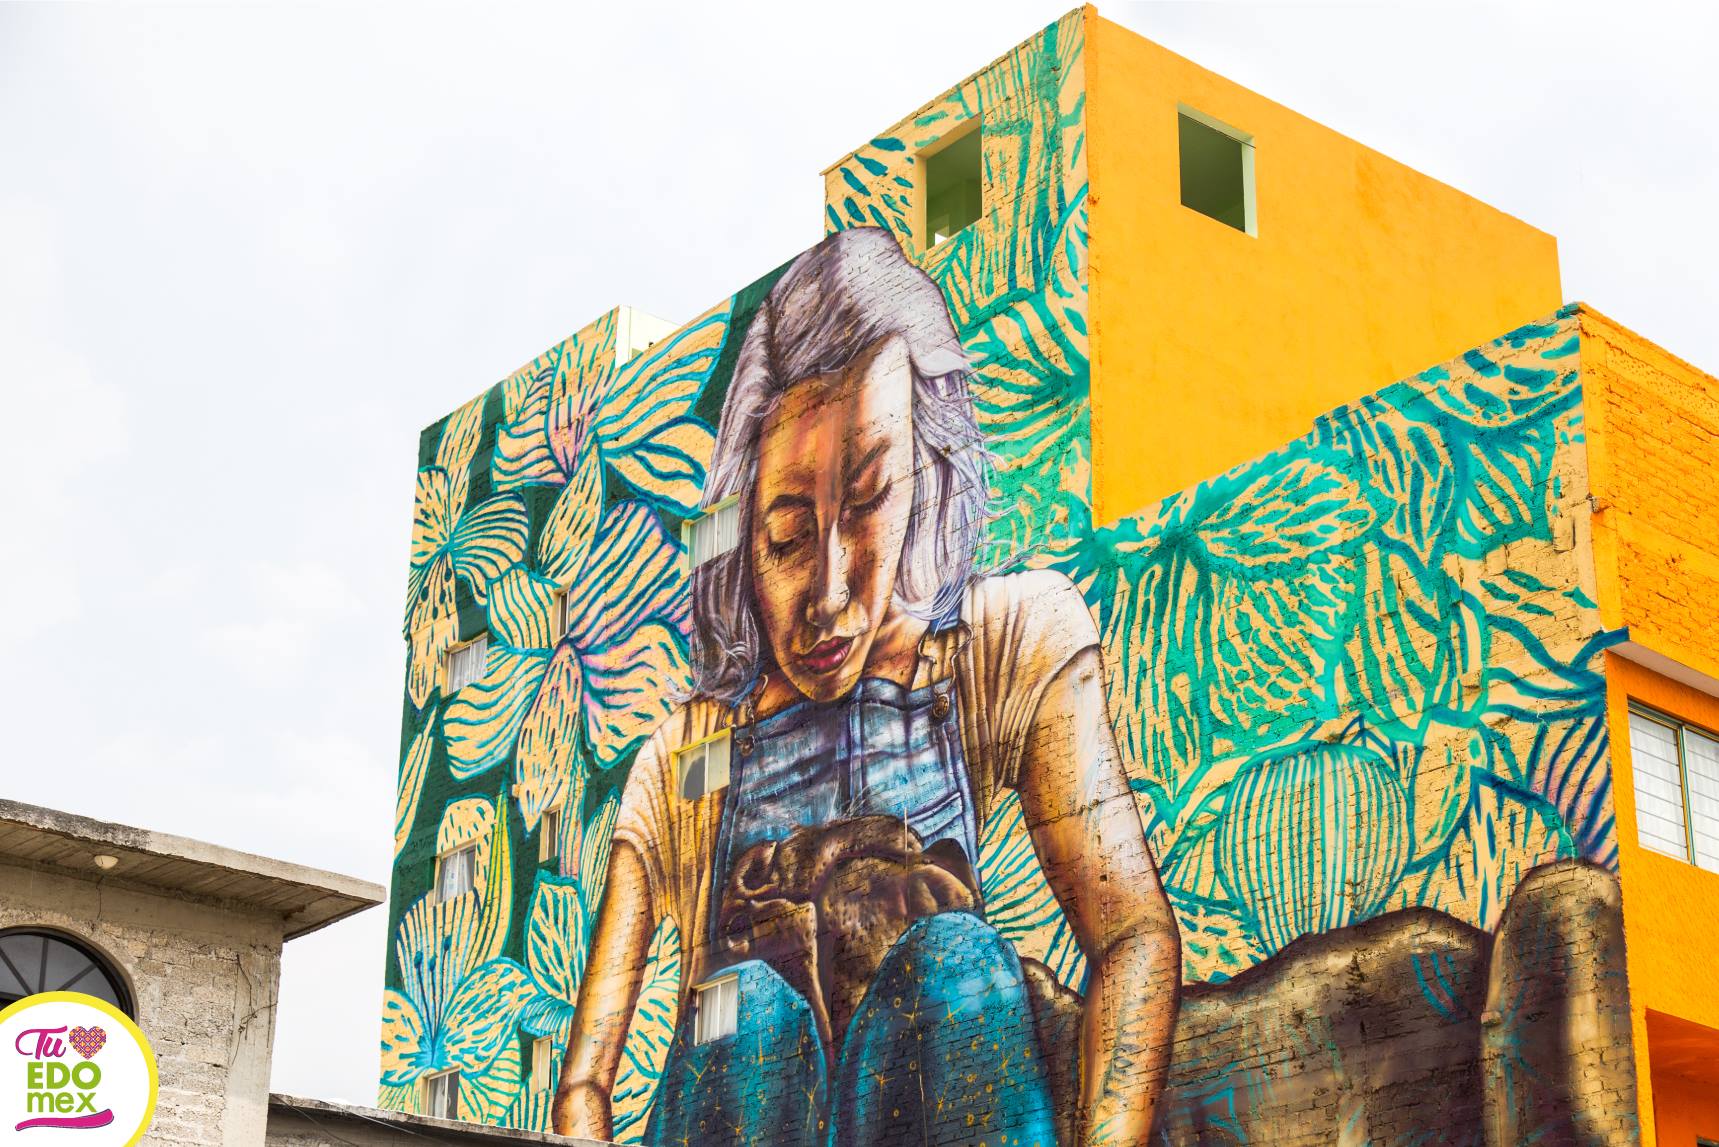 El arte urbano, símbolo de protesta contra la violencia en México